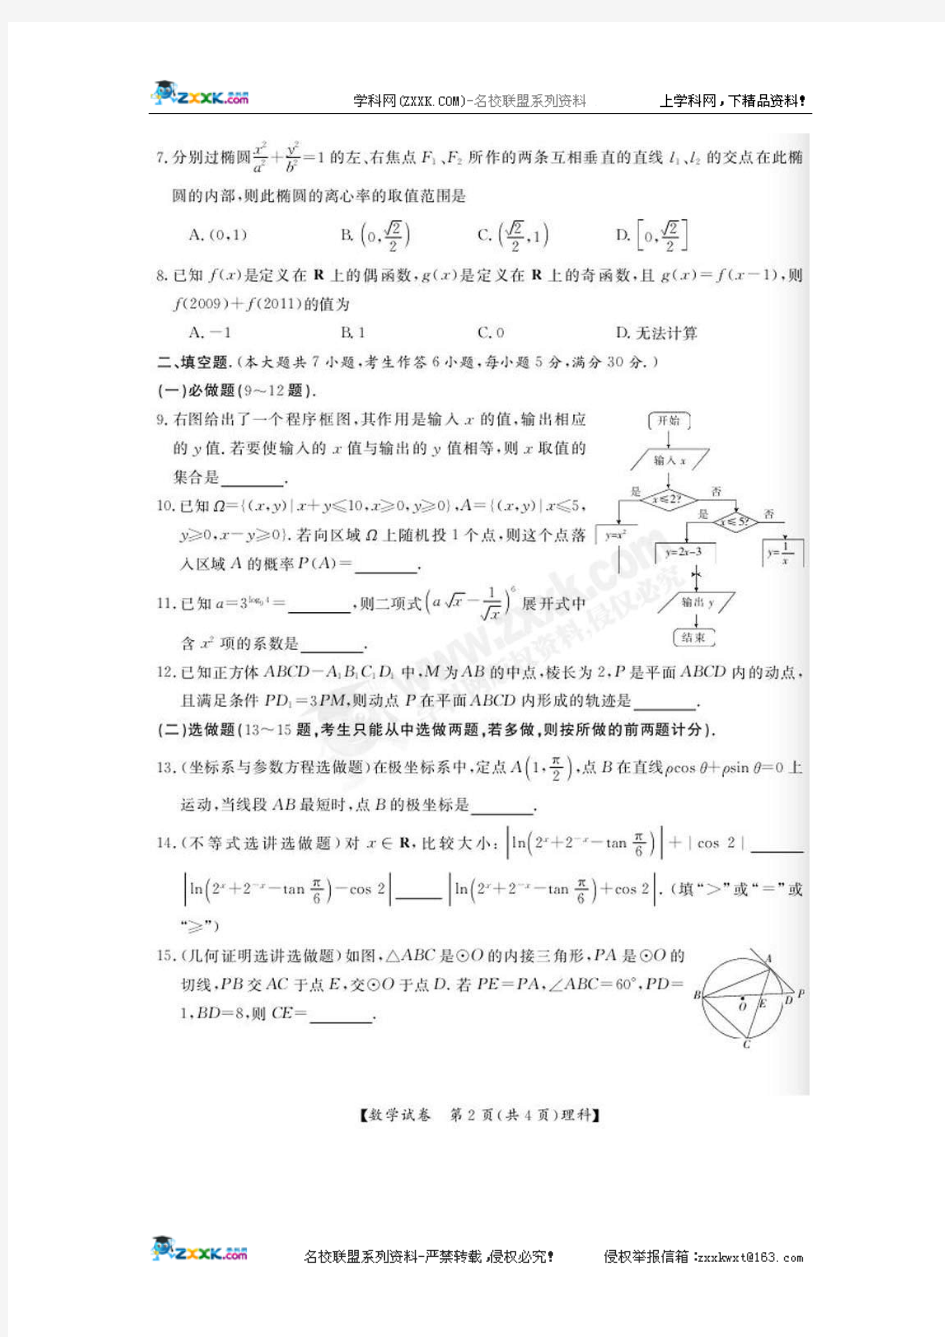 广东省2010届高考样本分析考试(全省联考)数学理科试题(扫描版)